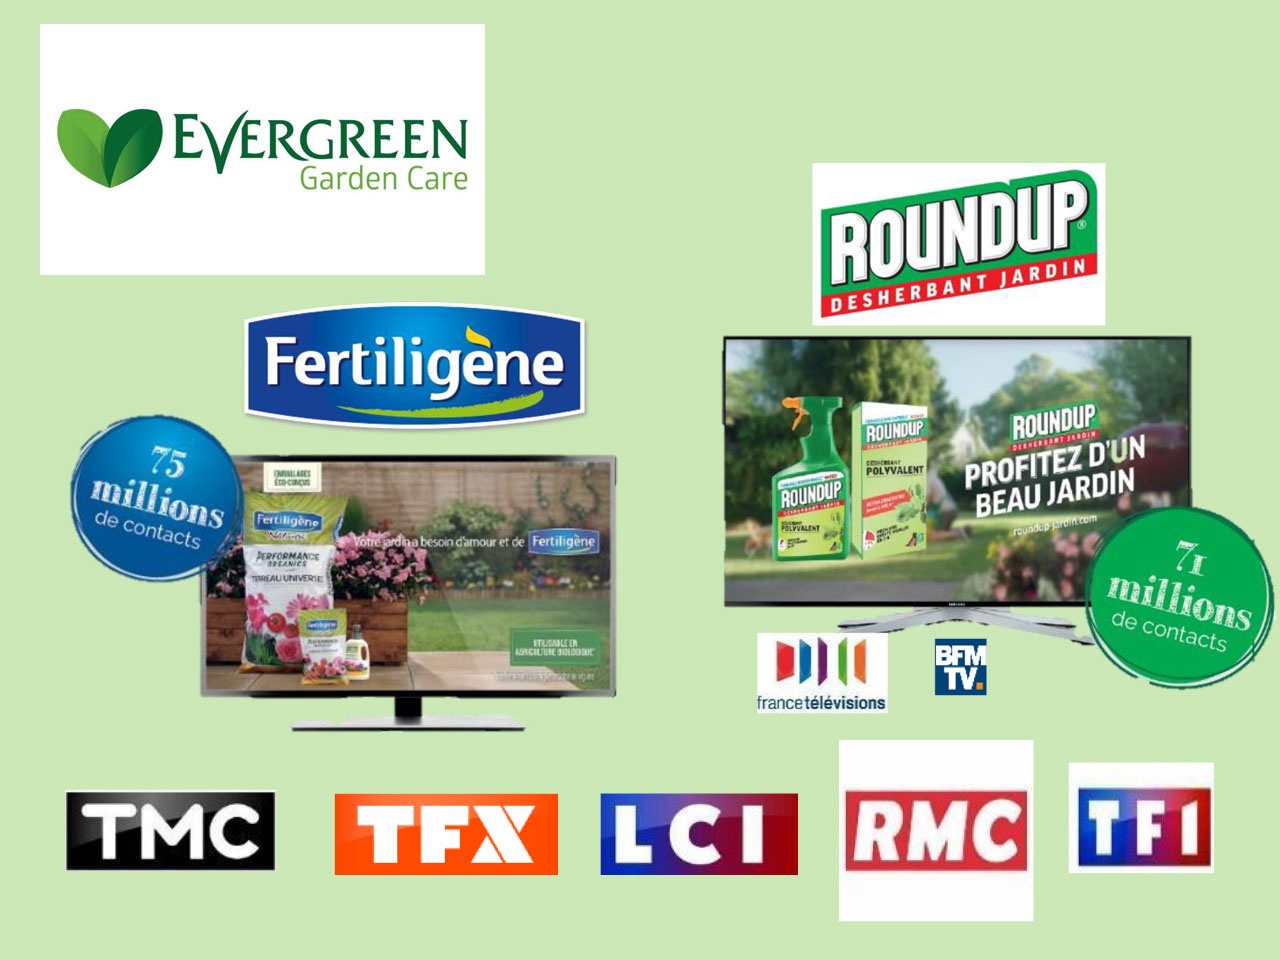 EVERGREEN GARDEN CARE : deux puissantes campagnes TV pour ses marques Fertiligène et Roundup®